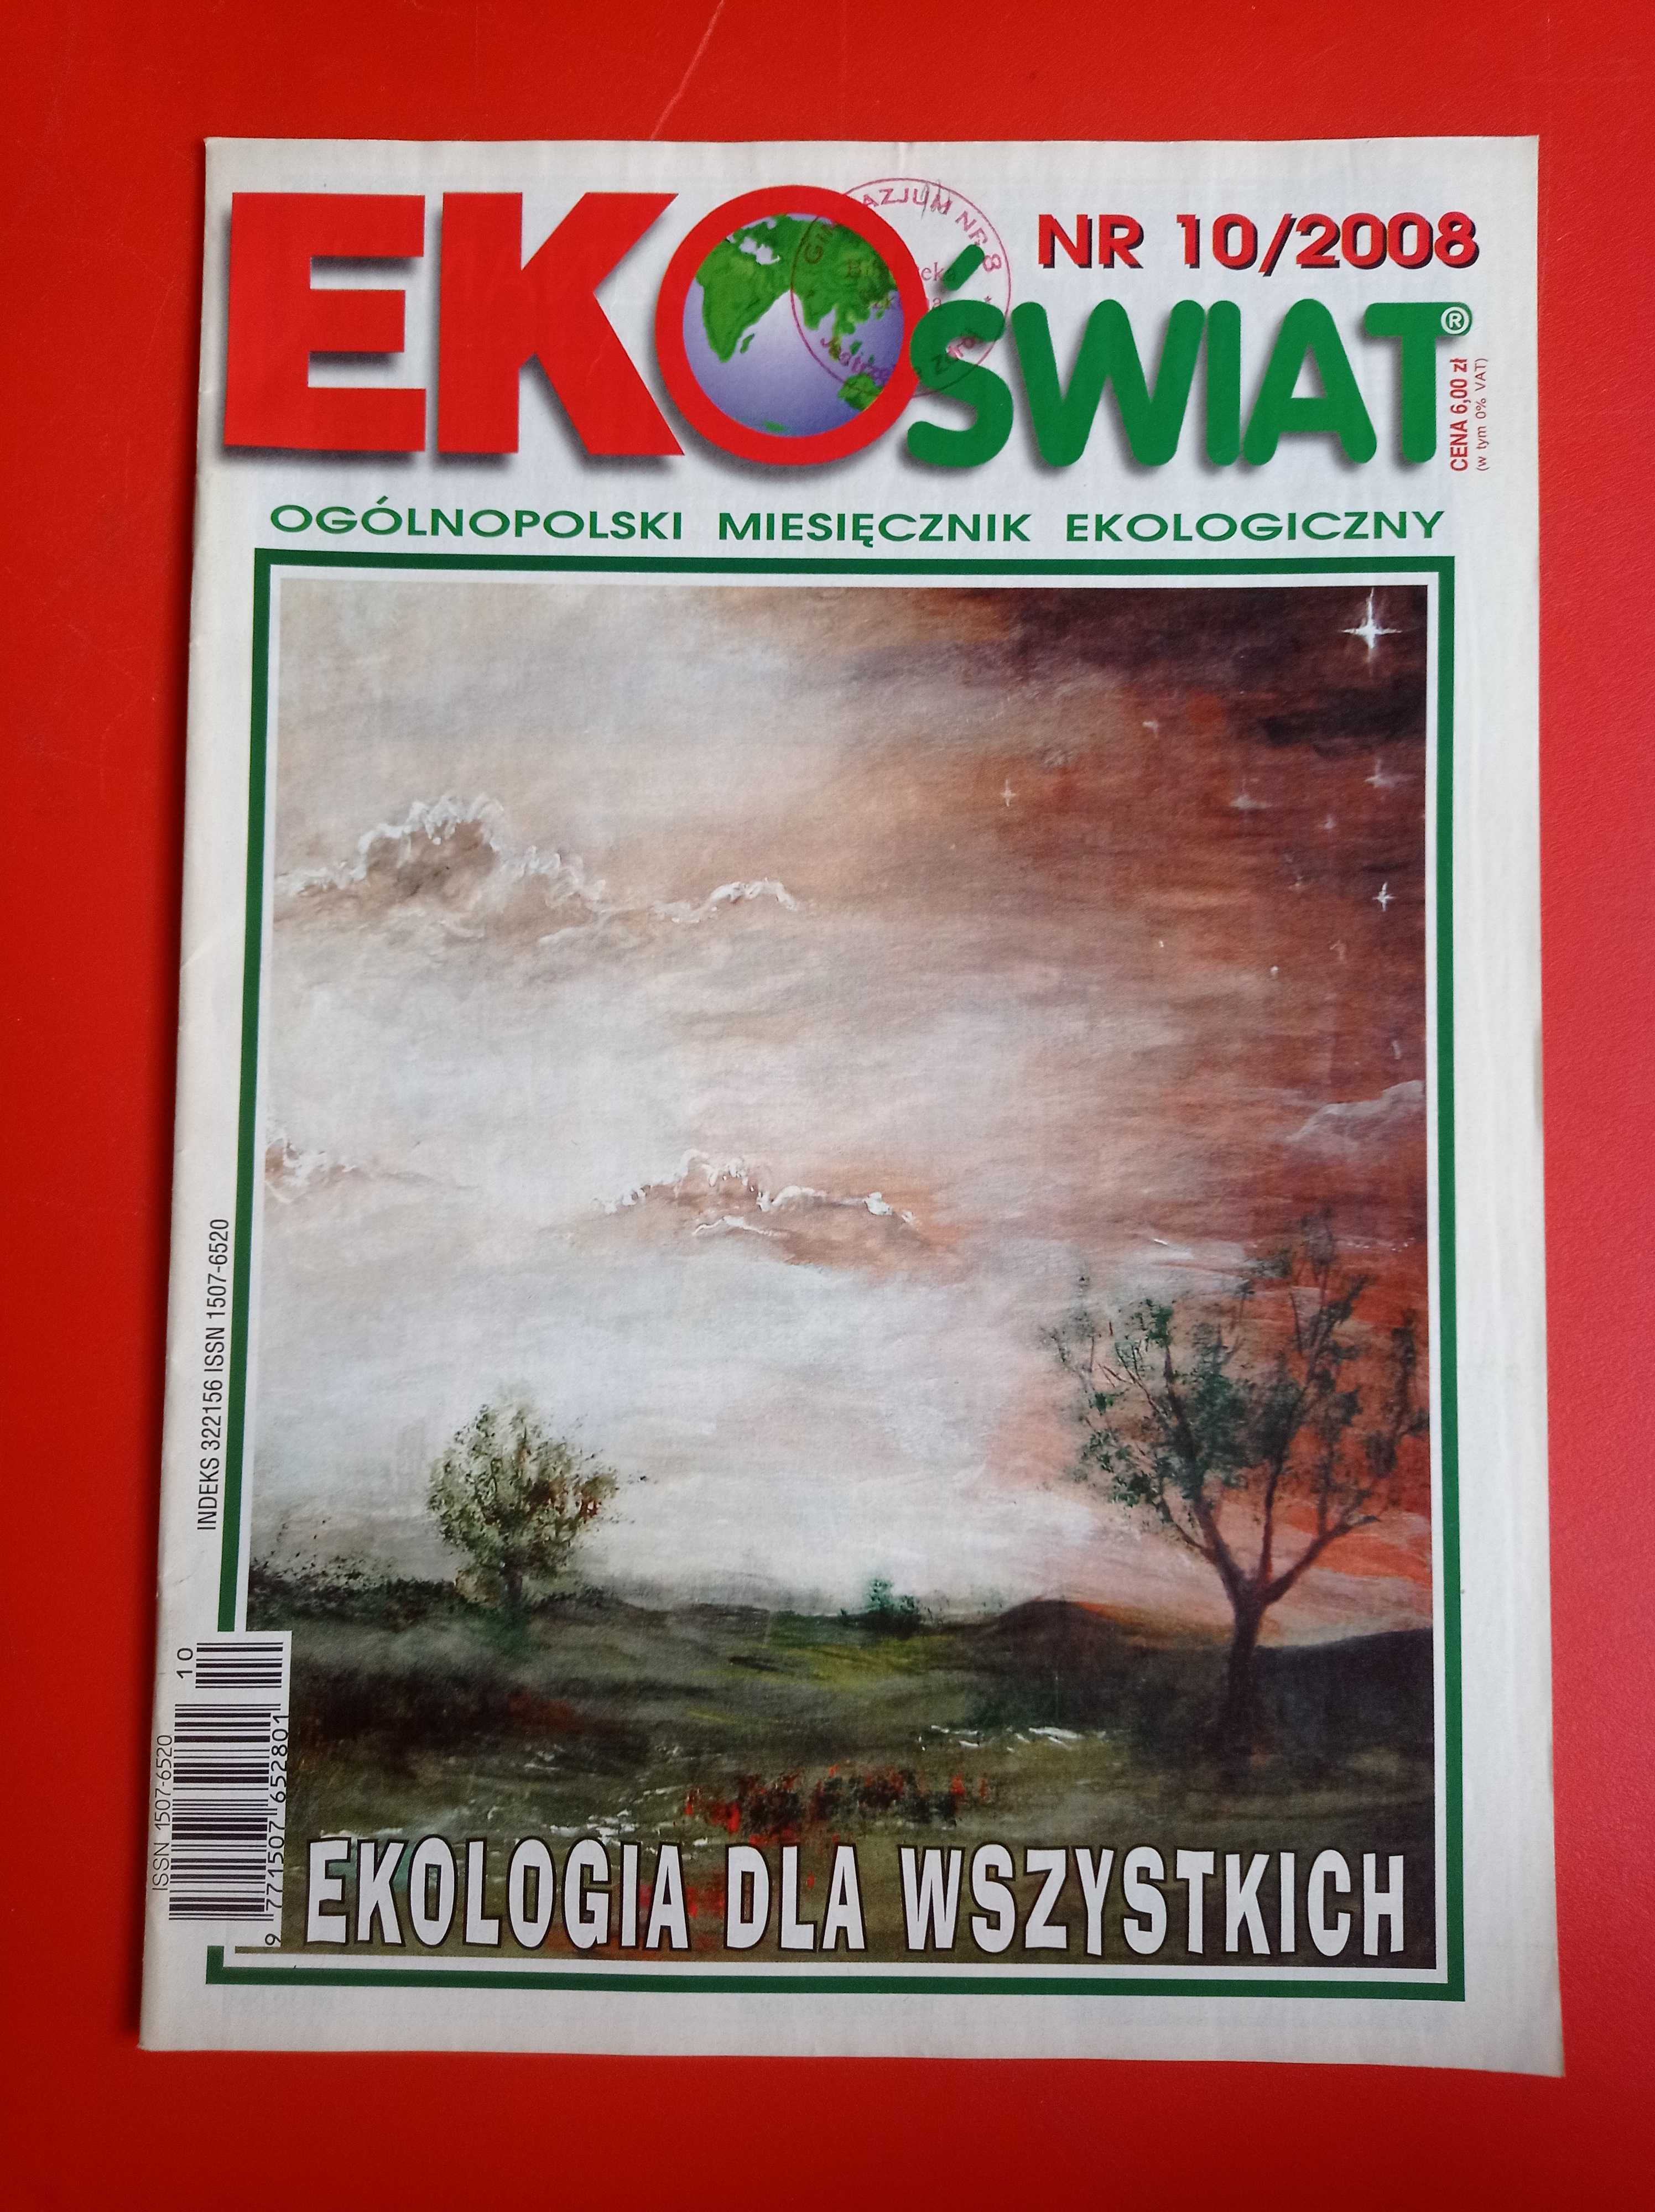 EkoŚwiat, miesięcznik ekologiczny, nr 10/2008, październik 2008